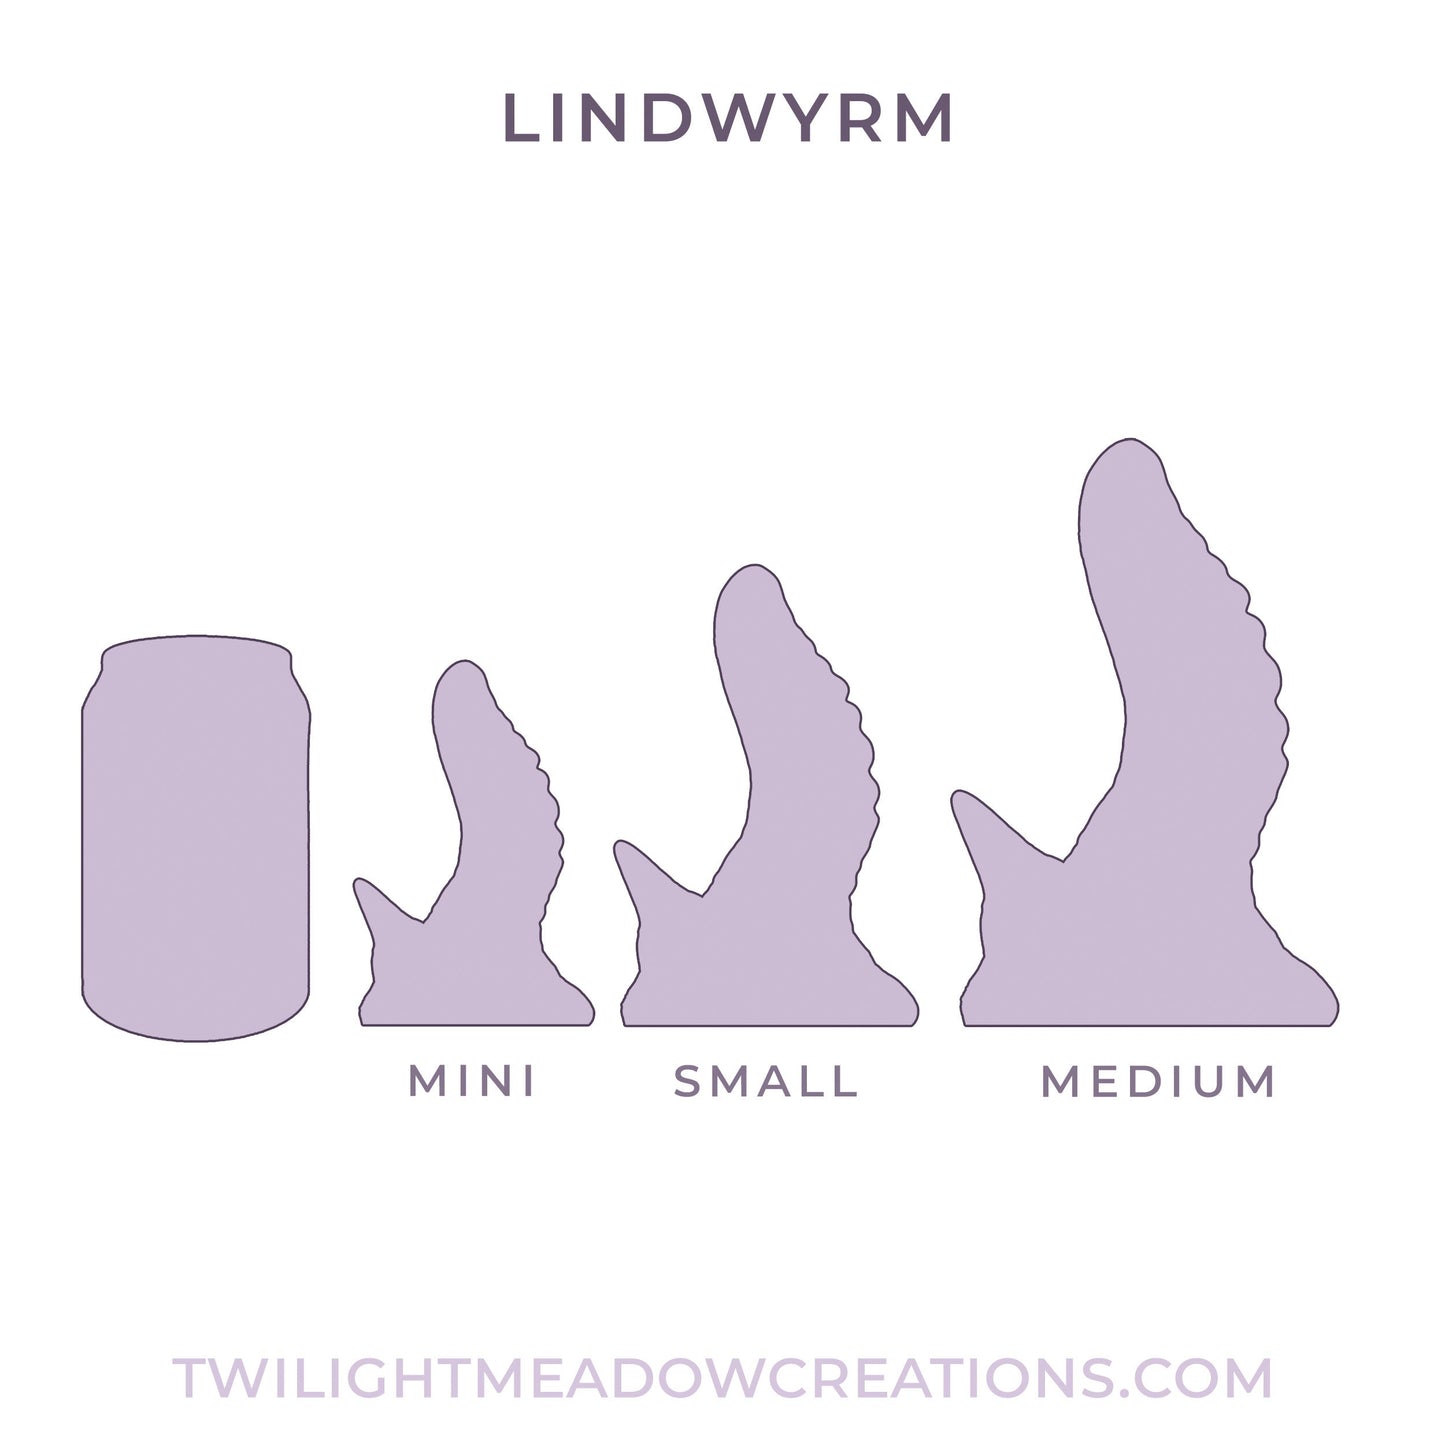 Small Lindwyrm (Firmness: Soft)